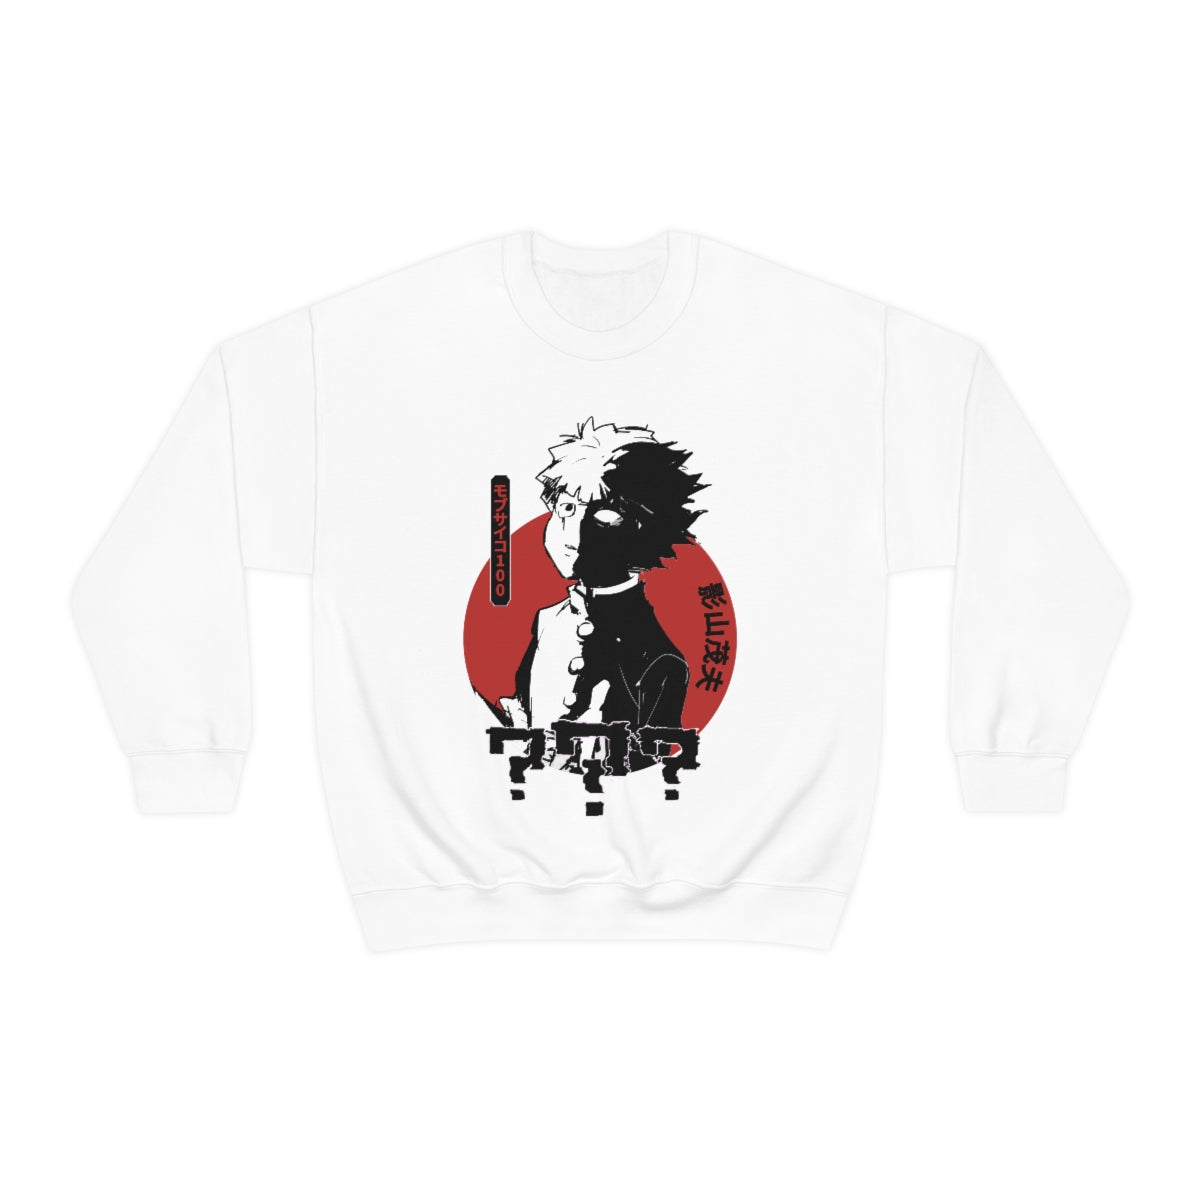 Mob Psycho 100 Sweatshirt, Shigeo Kageyama, Anime shirt, Aesthetic, Reigen,Japanese, Unisex